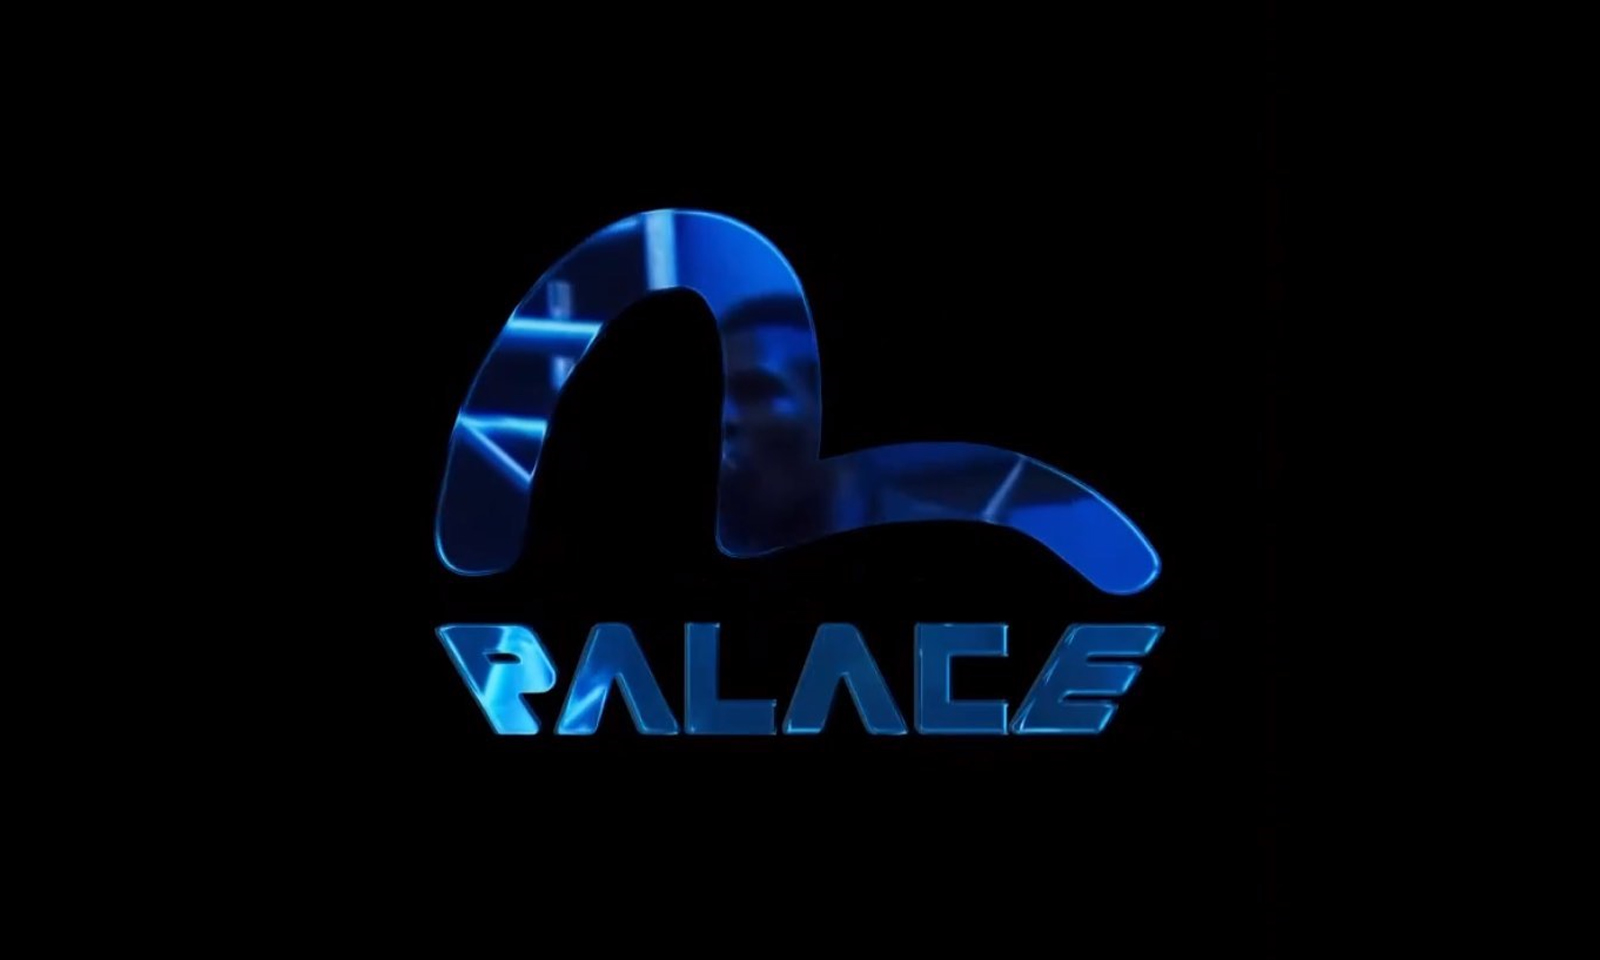 PALACE x EVISU 3.0 合作系列即将来袭